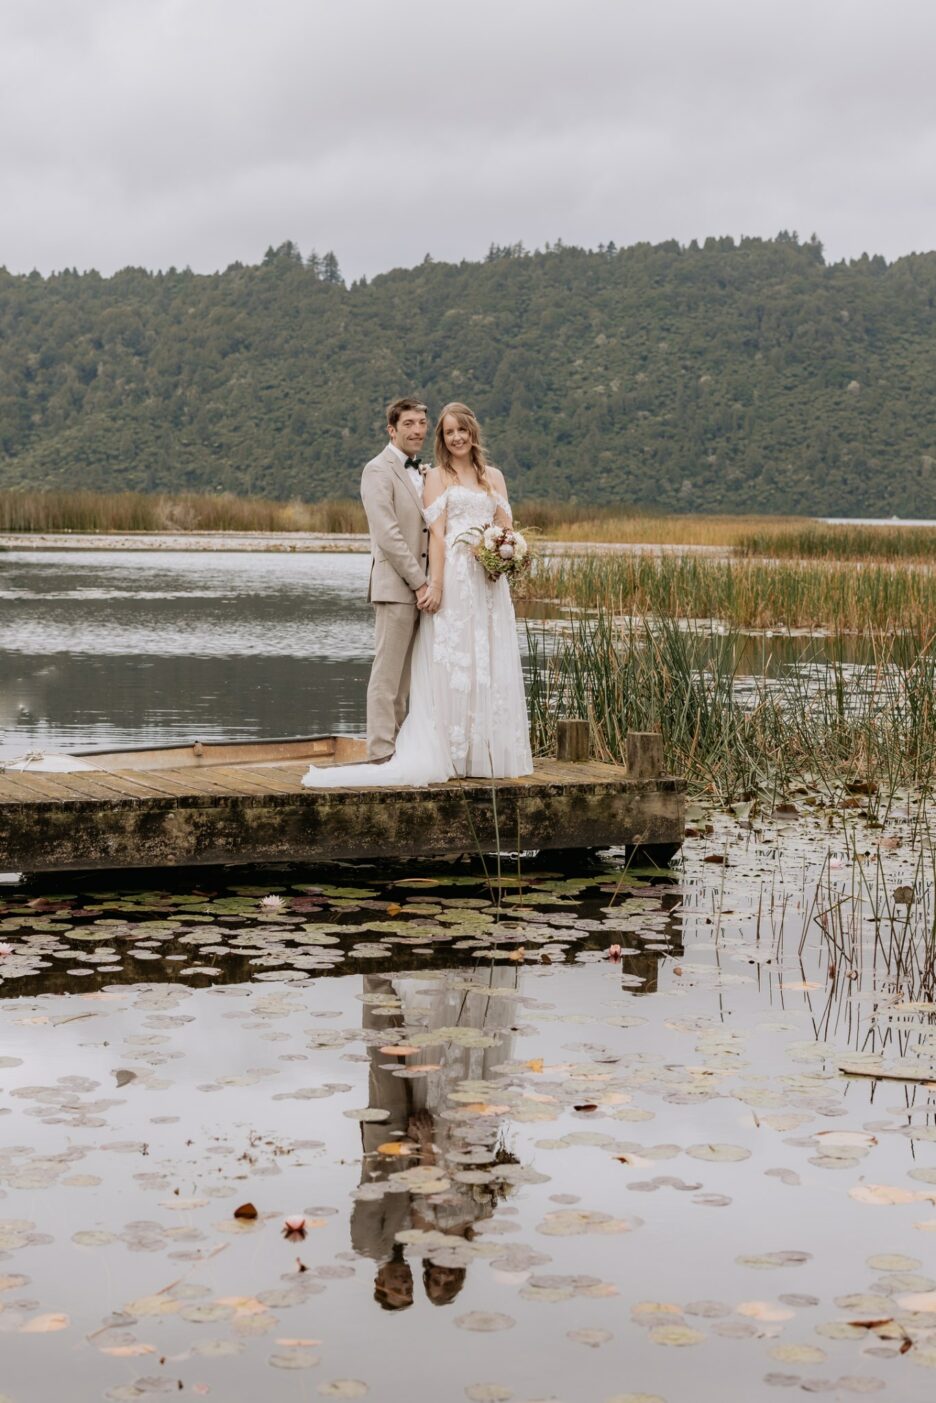 Wedding photos taken on wharf at Lake Okareka at longfords estate